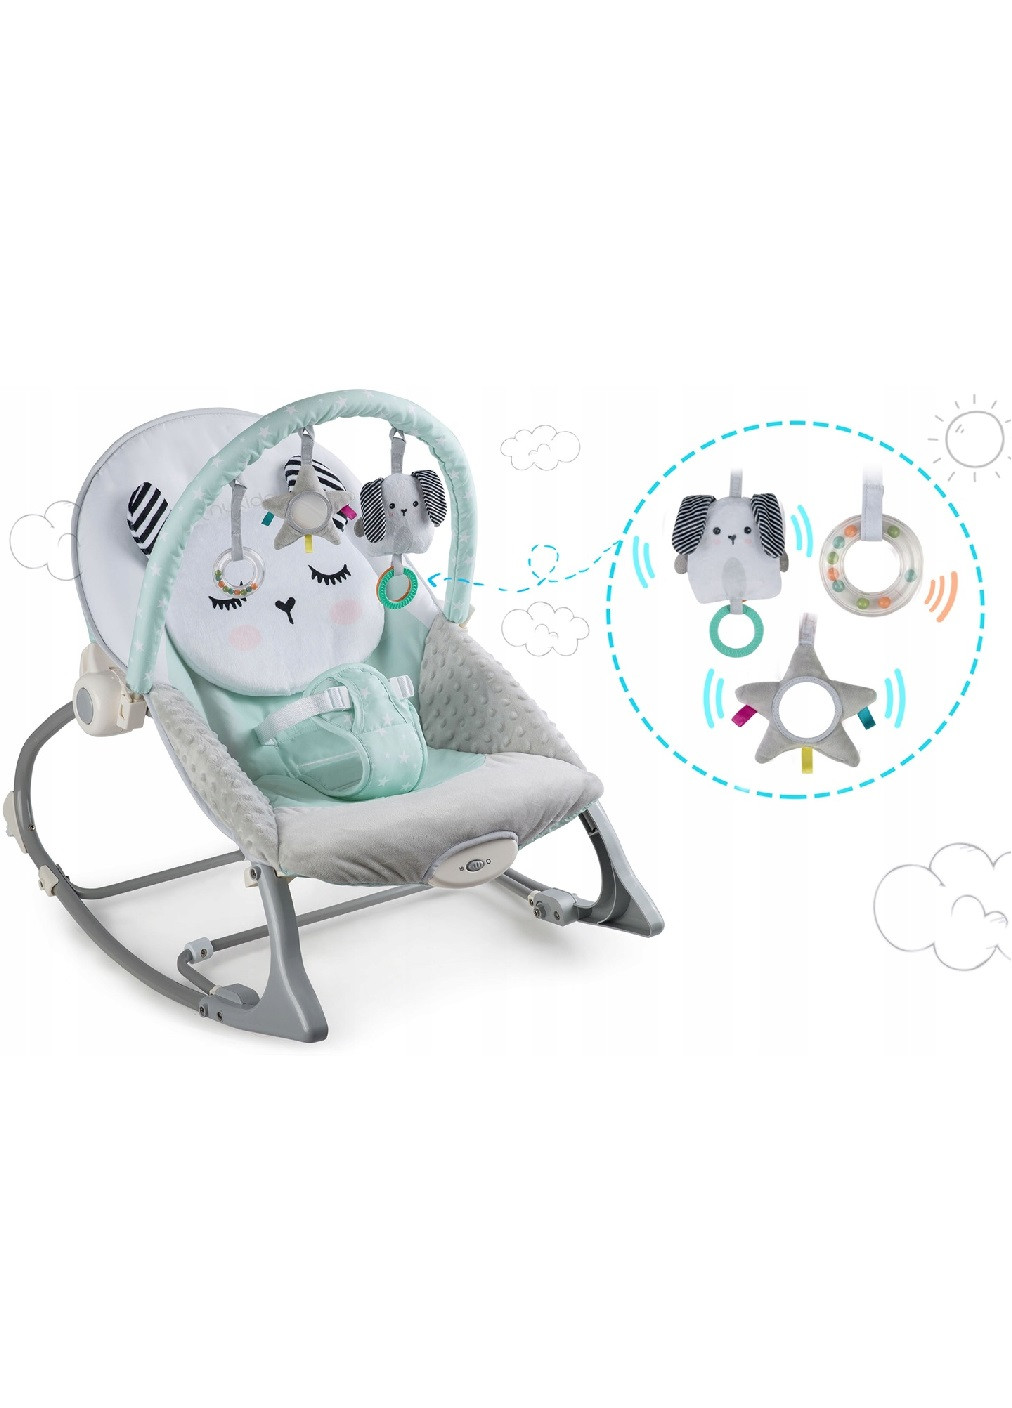 Детское кресло качалка качеля шезлонгмногофункциональное для детей малышей с вибрацией 62х48 см (475199-Prob) Светло-зеленое Unbranded (263131997)